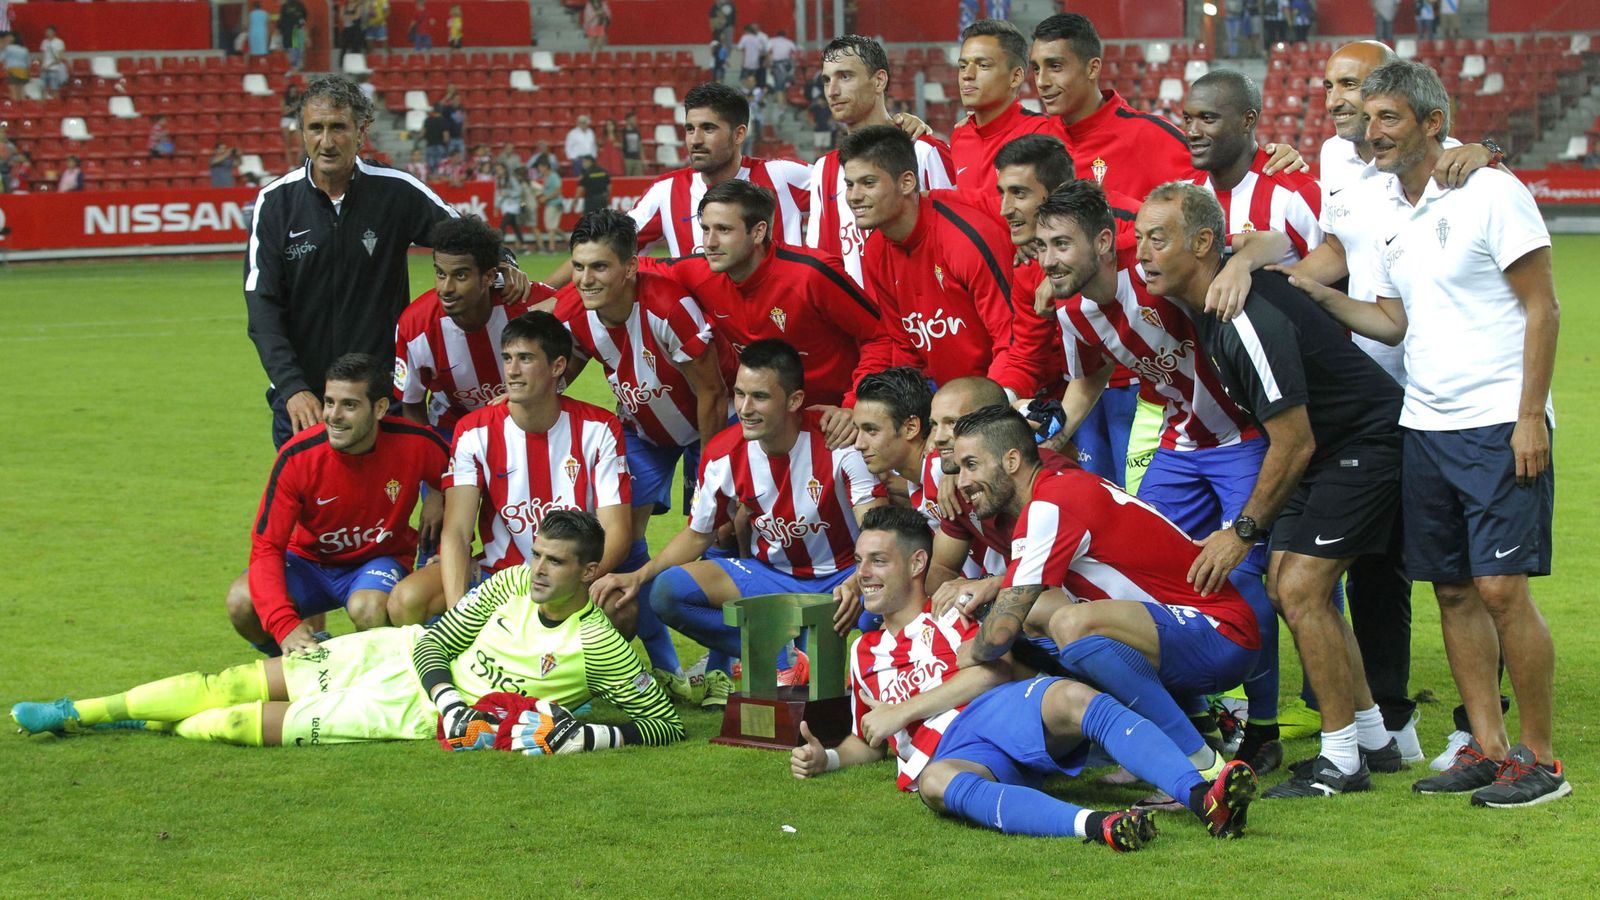 Foto: El Sporting posa junto al Trofeo Villa de Gijón. (Alberto Morante/EFE)